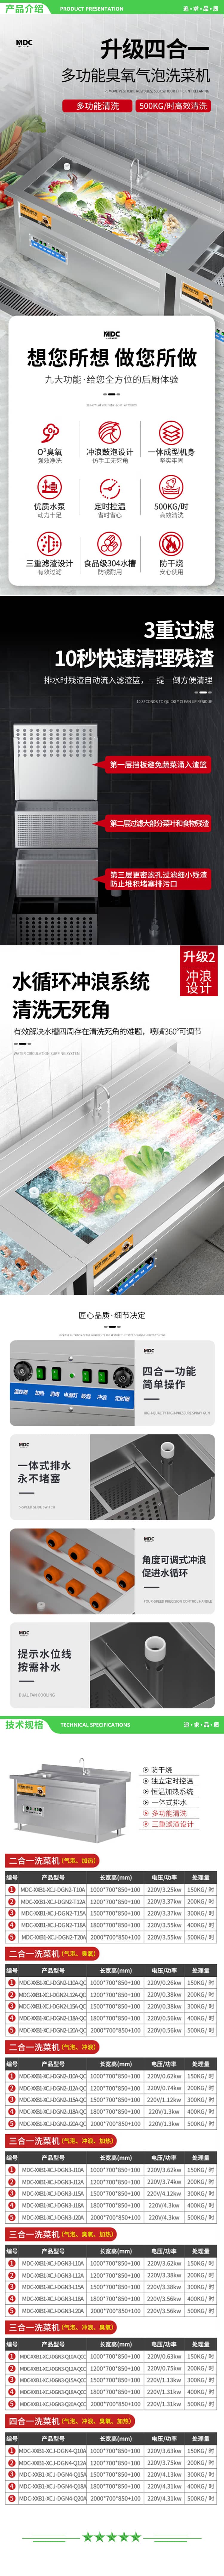 麦大厨 MDC-XXB1-XCJ-DGN2-J10A-QC 商用洗菜机全自动多功能涡流气泡冲浪式食堂果蔬清洗机 2.jpg